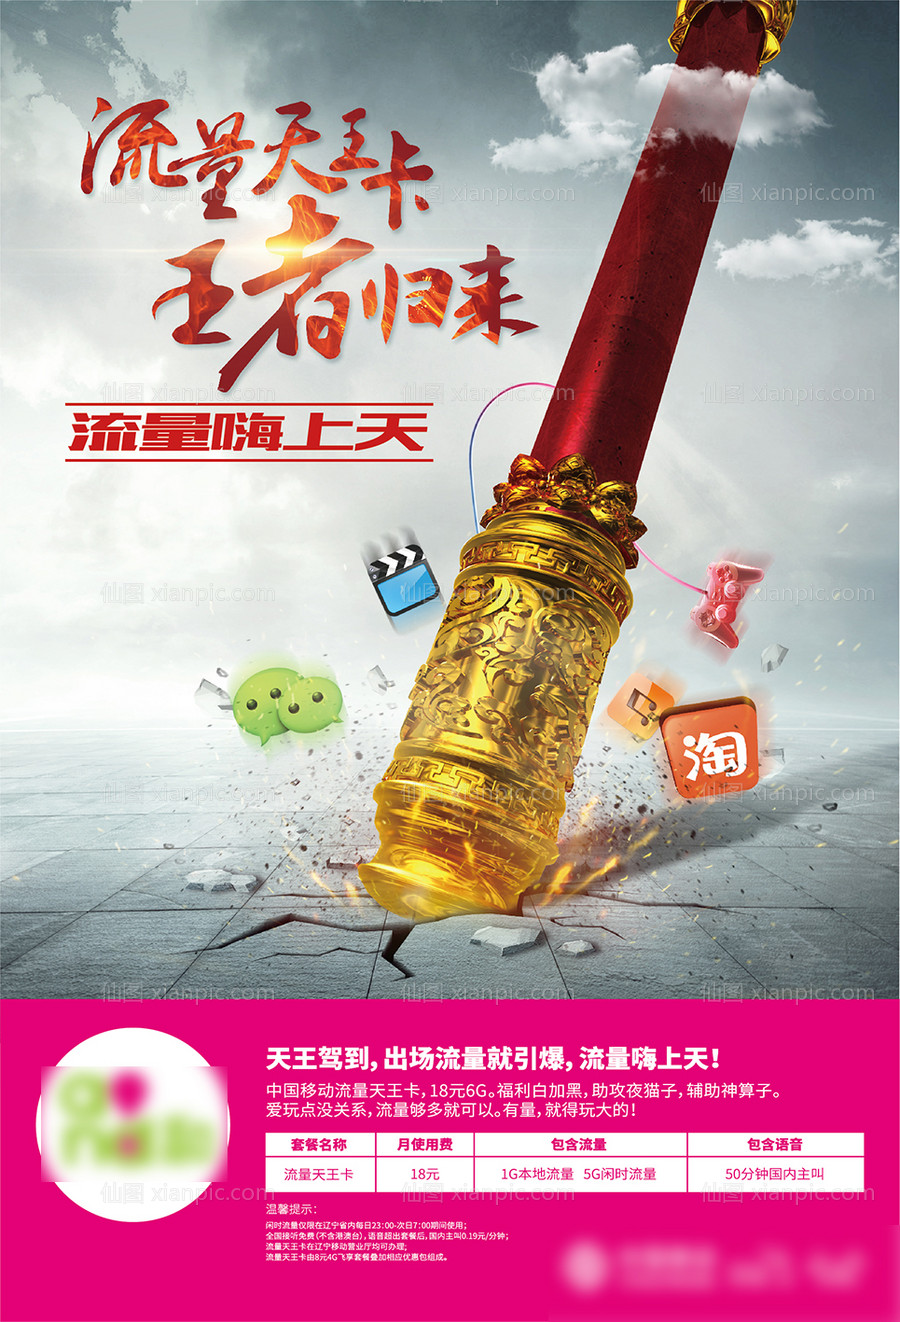 素材乐-通信天王卡手机流量套餐创意海报